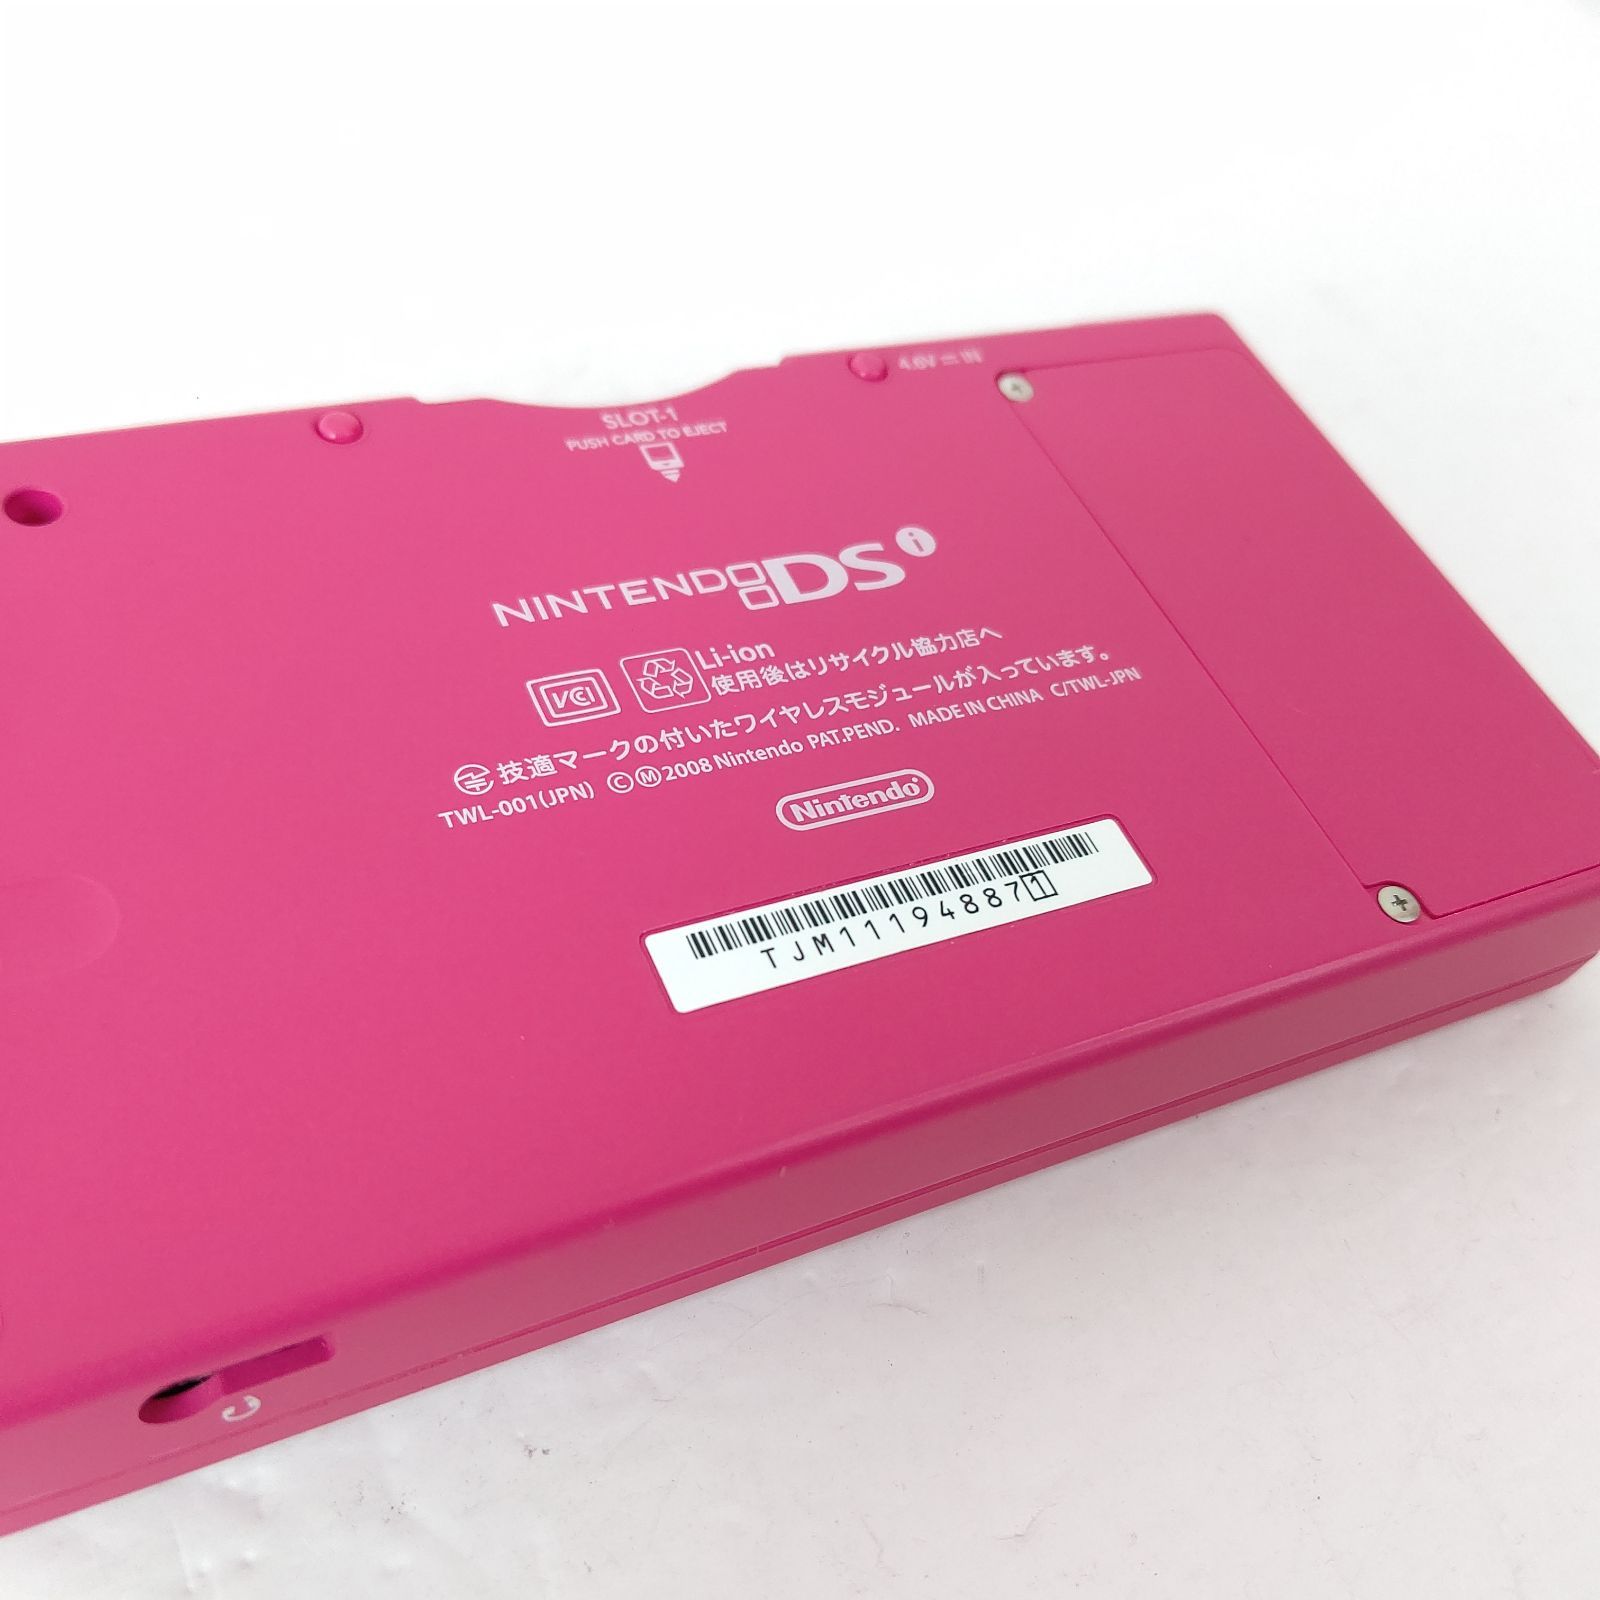 ニンテンドーDS i ピンク 本体 新品タッチペン - 携帯用ゲーム本体